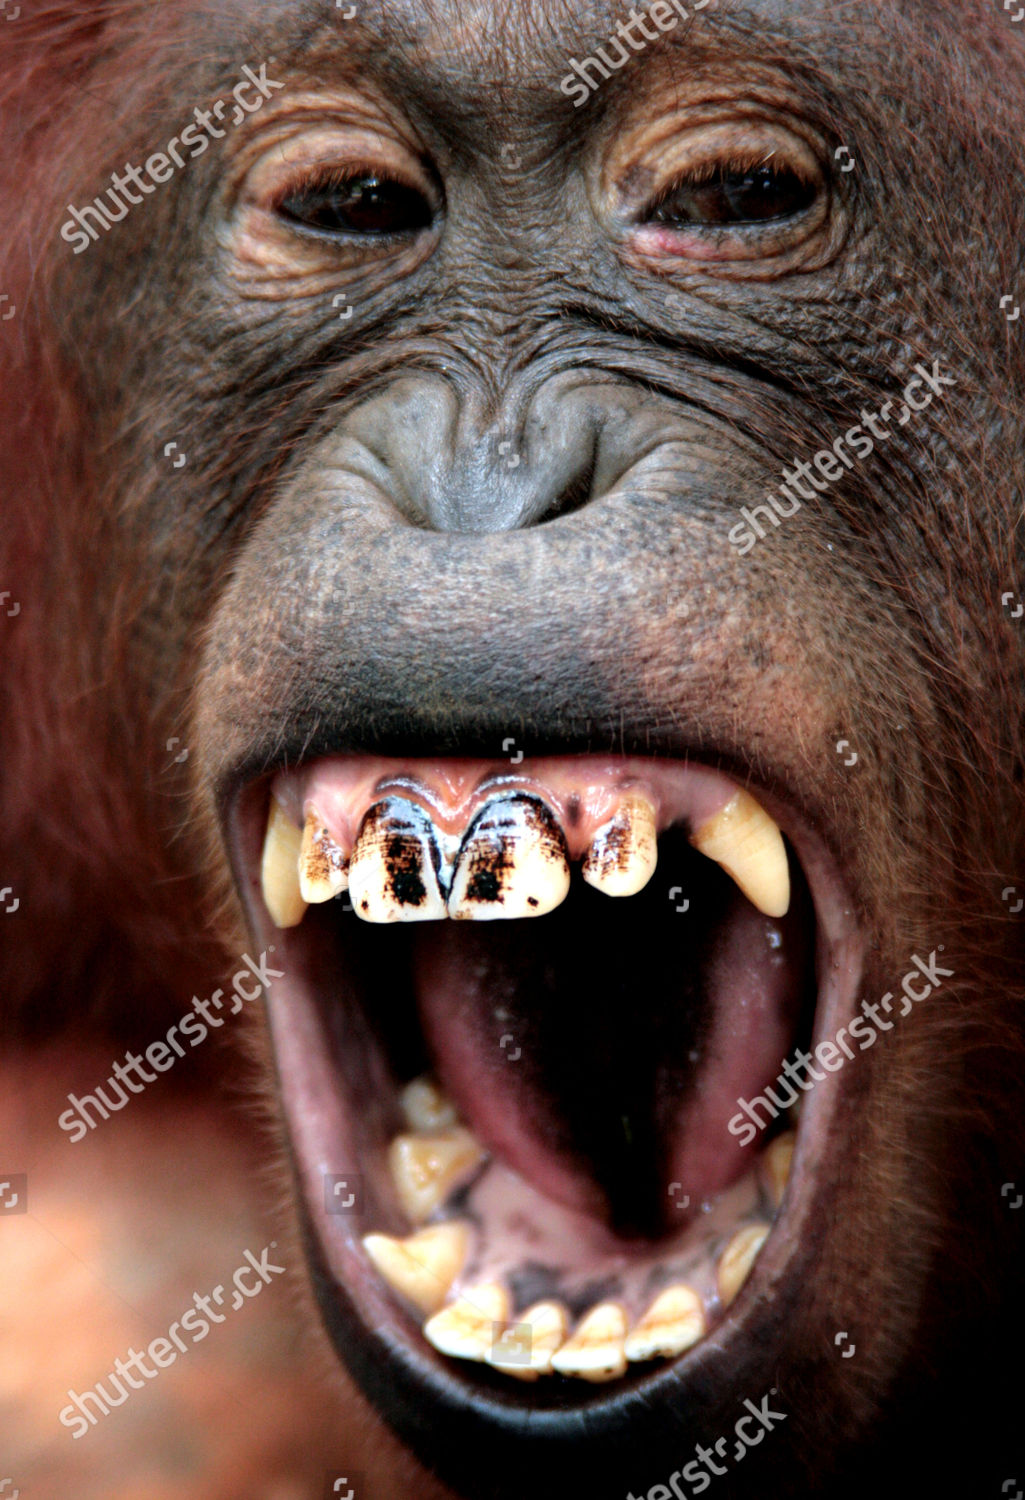 orangutan teeth